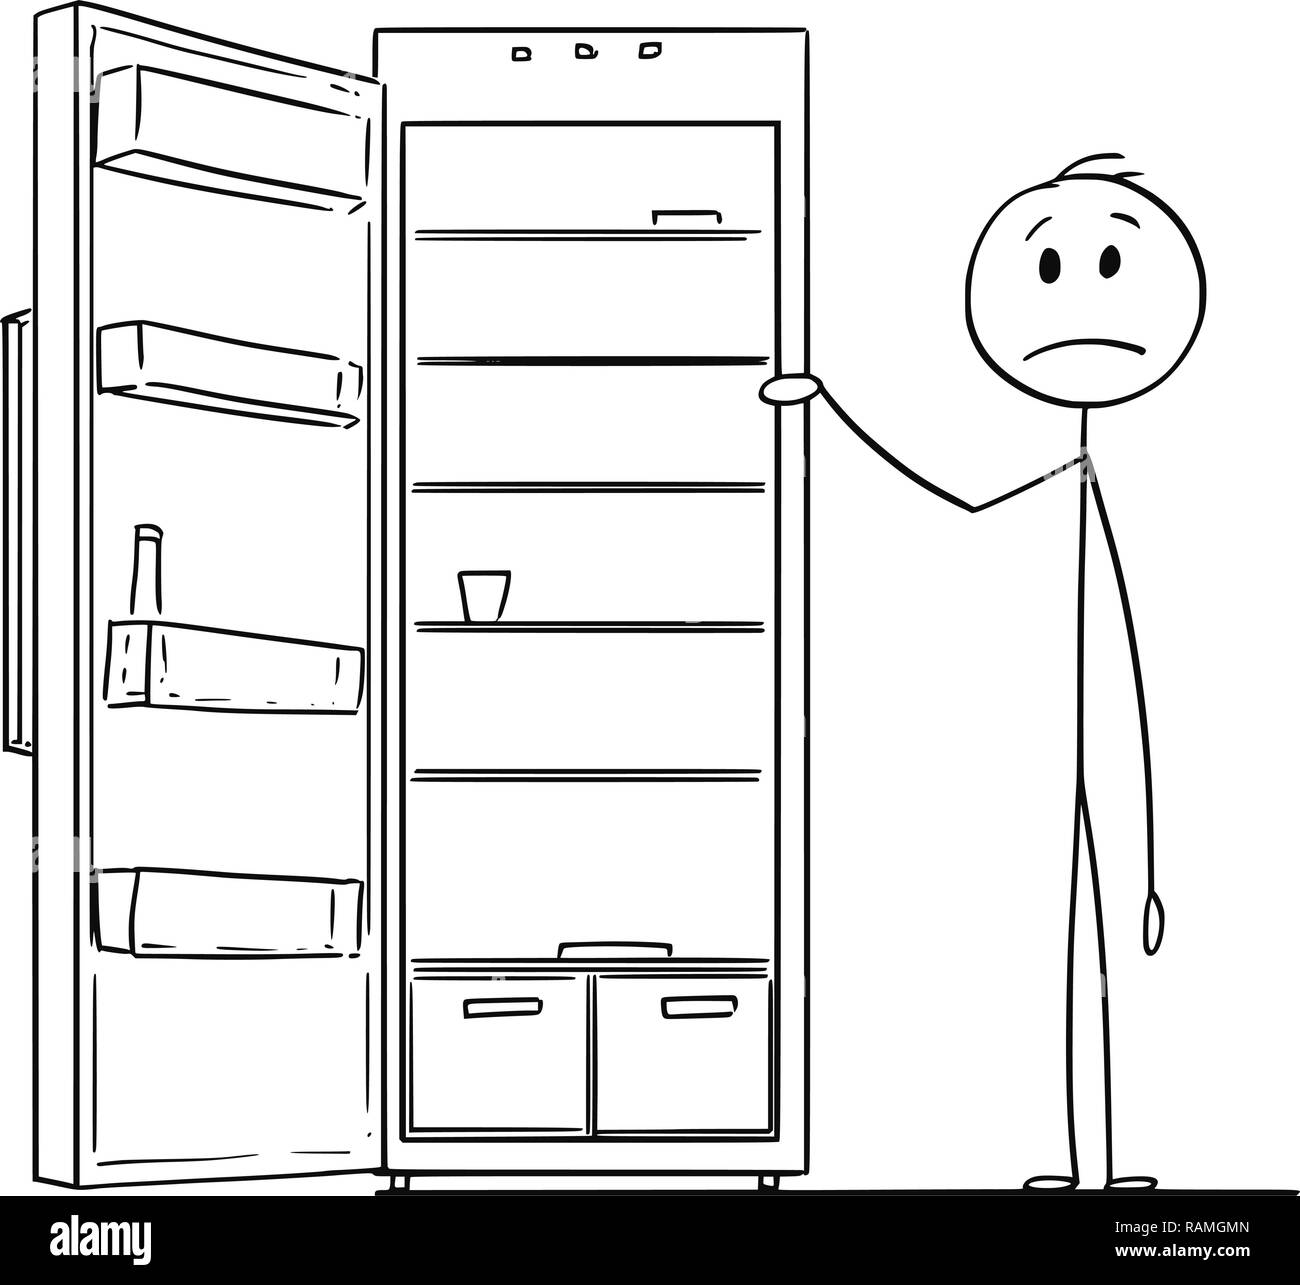 Cartoon fridge immagini e fotografie stock ad alta risoluzione - Alamy